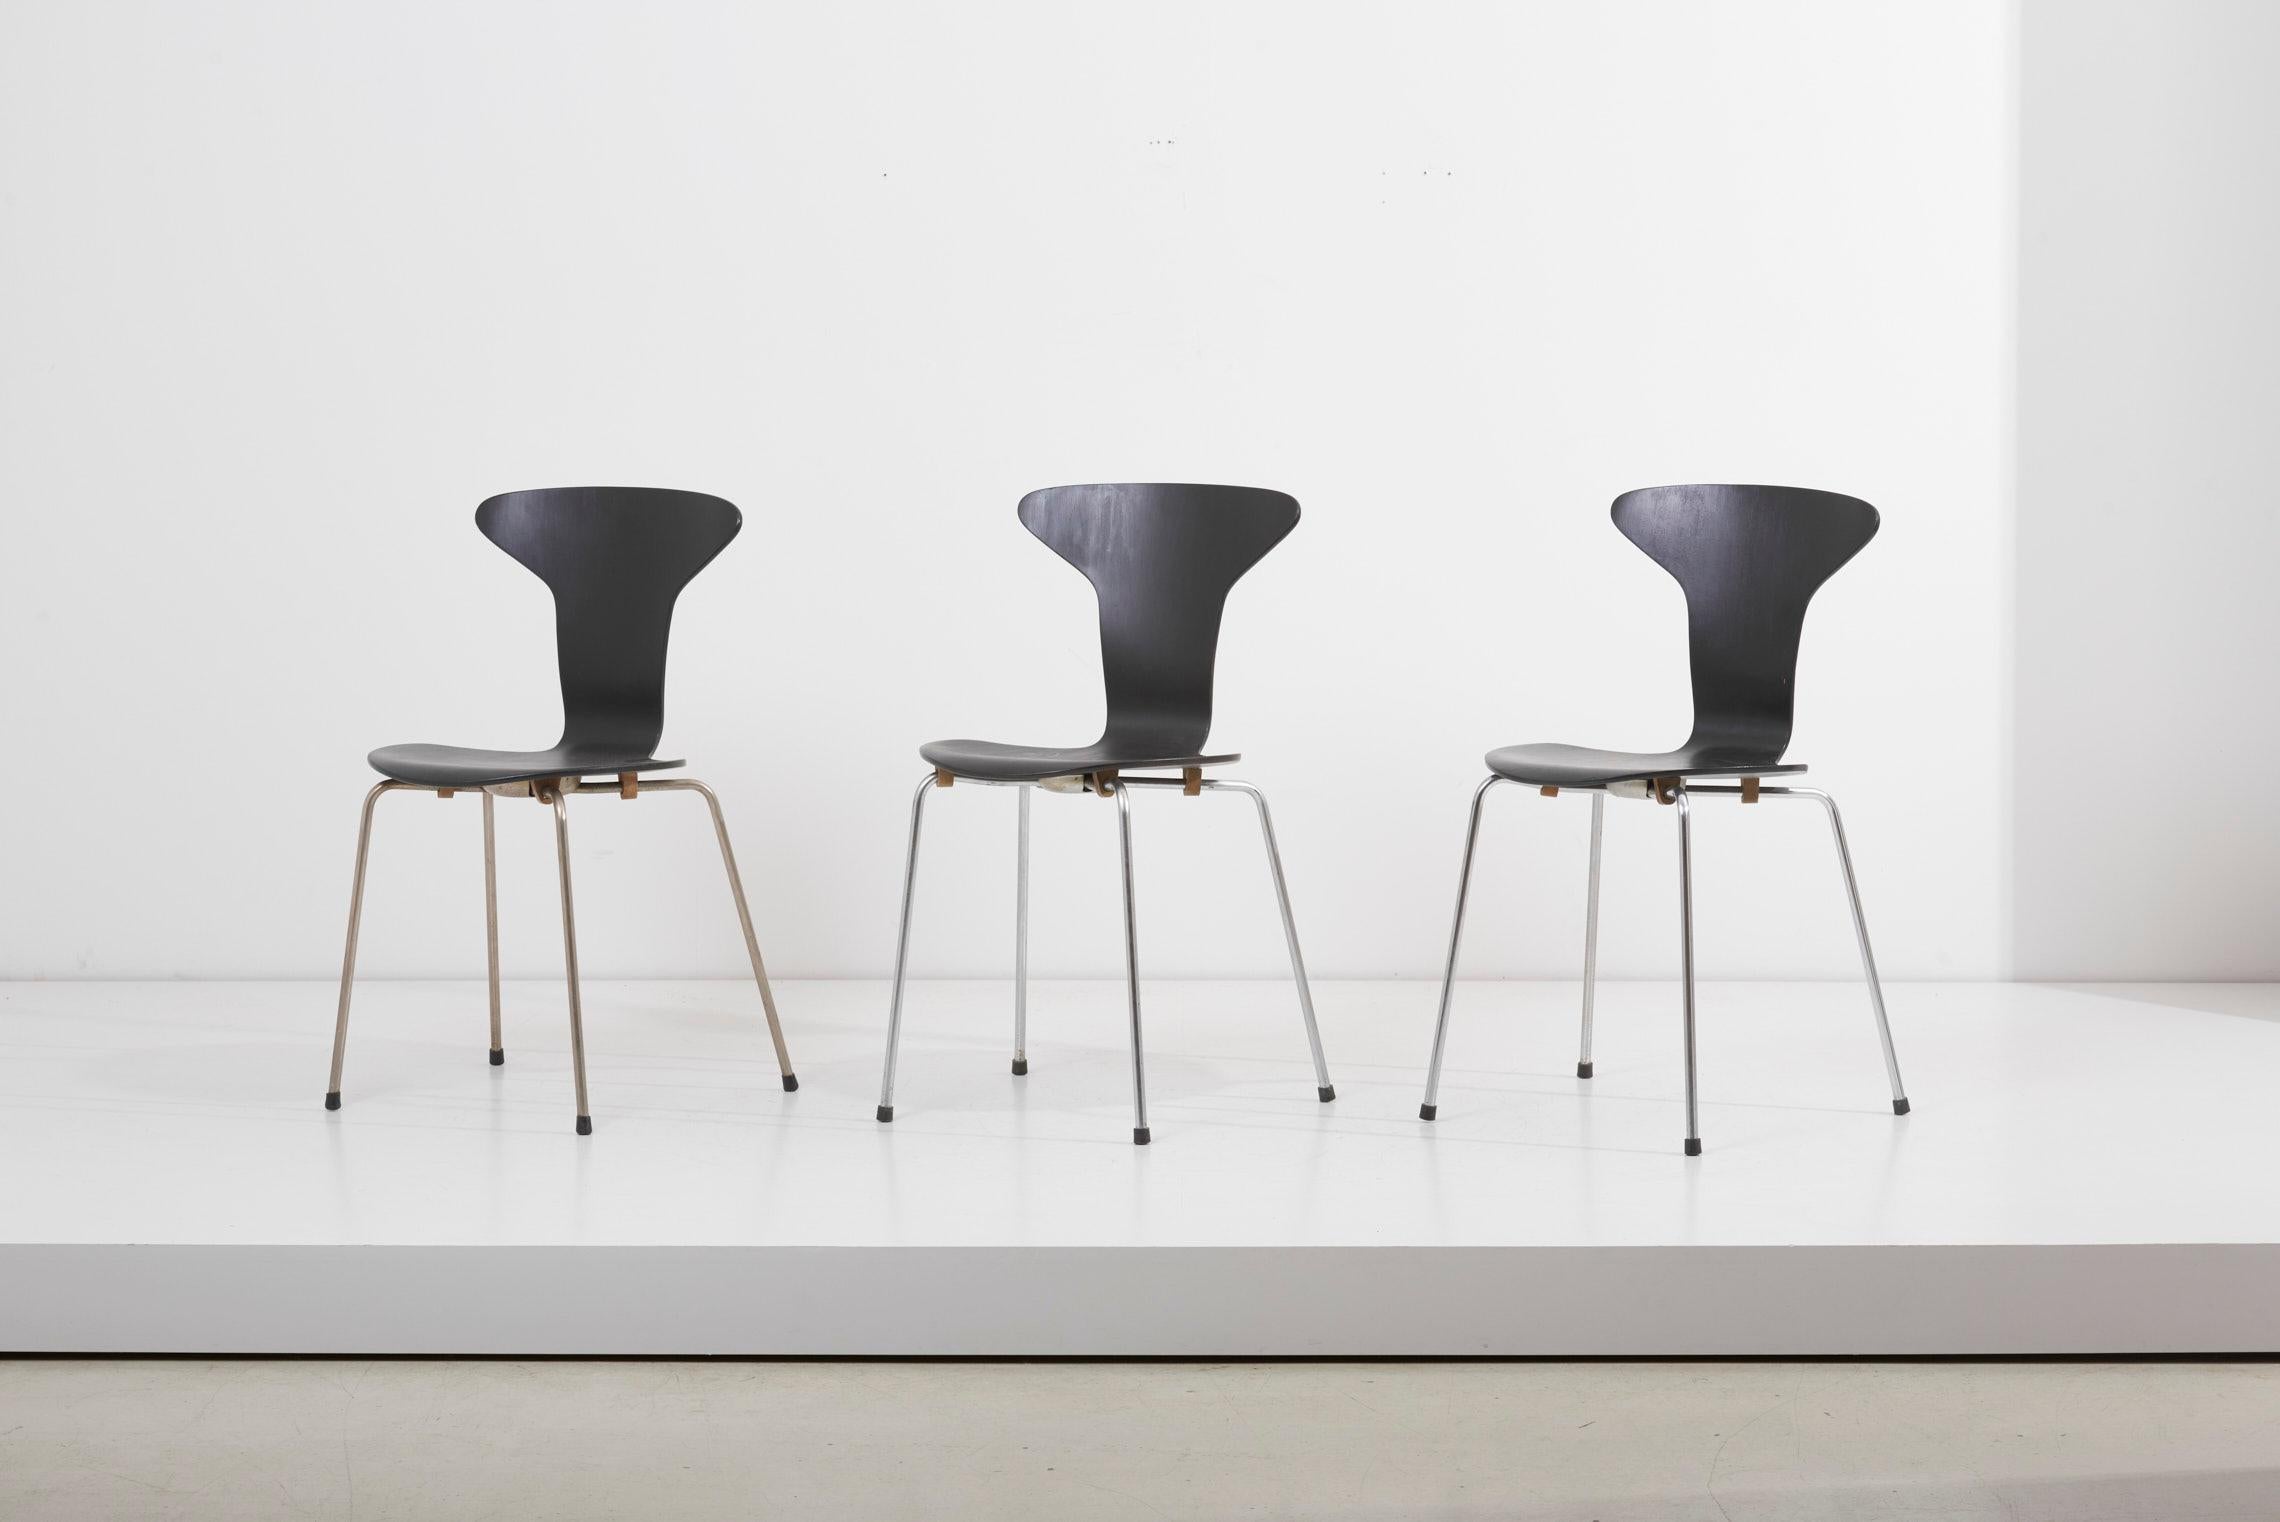 Satz von 3 schwarzen 'Mosquito' Munkegård Modell Nr. 3105 Stühle, entworfen von Arne Jacobsen für Fritz Hansen, Dänemark in den 1950er Jahren. Stapelbare Stühle sind stapelbar und aus gebogenem, schwarz lackiertem Schichtholz gefertigt. Gestützt von